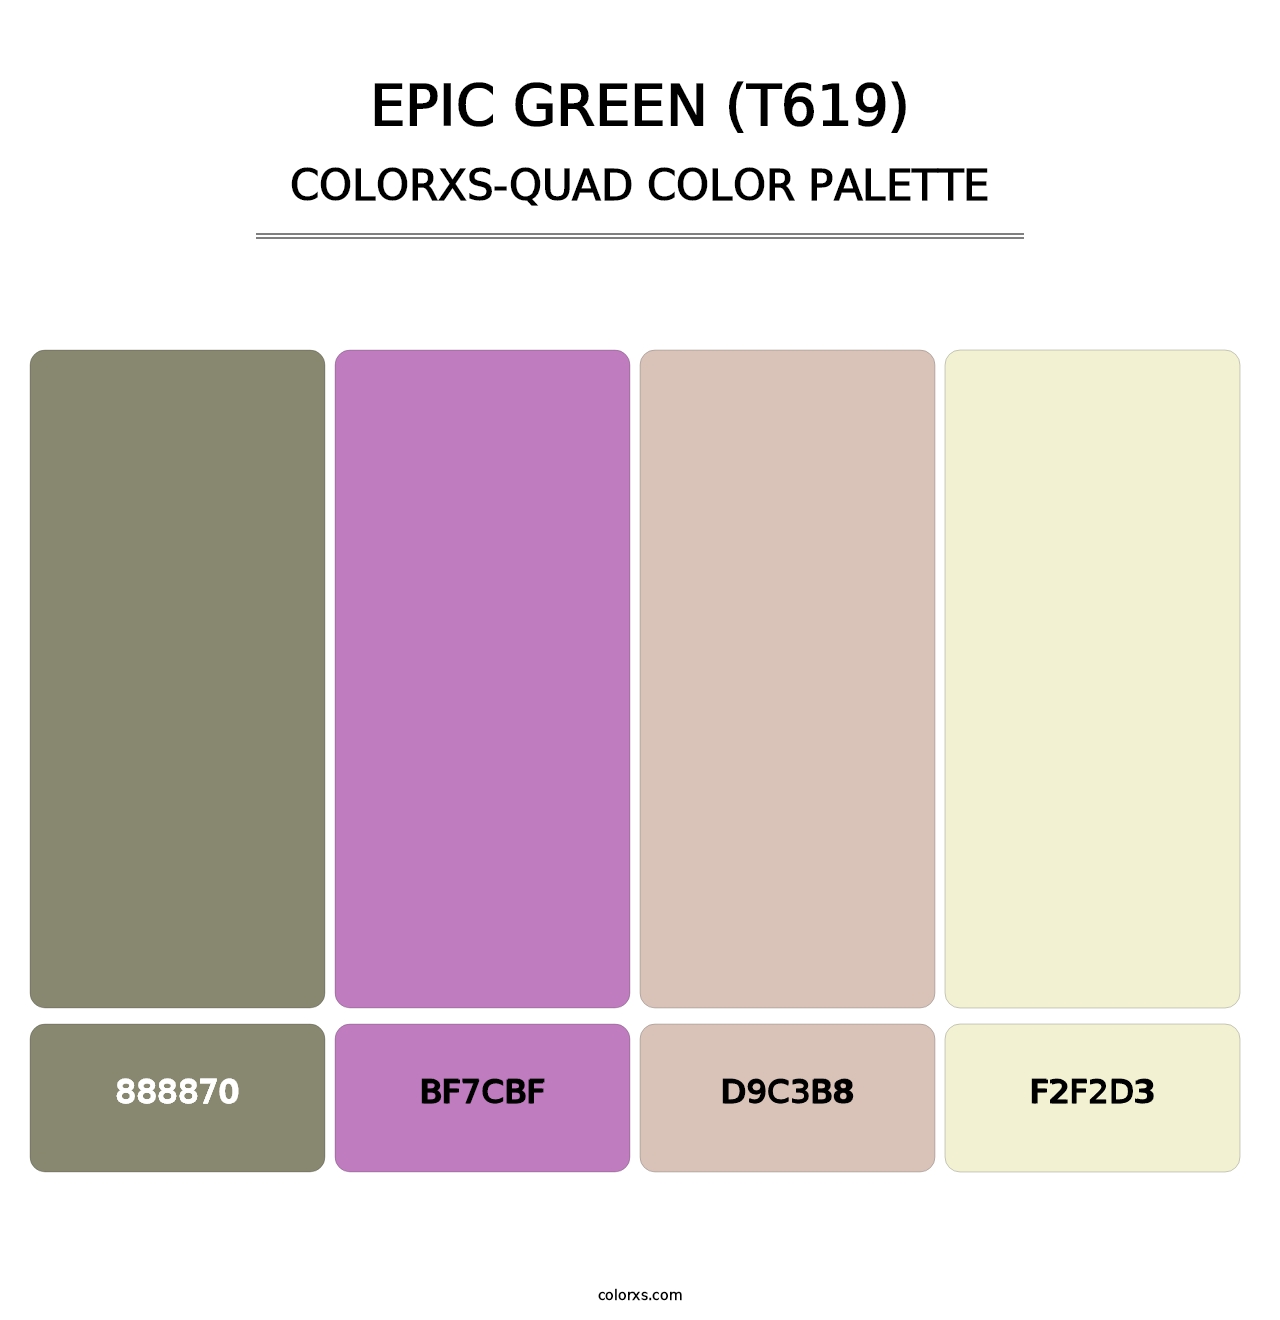 Epic Green (T619) - Colorxs Quad Palette